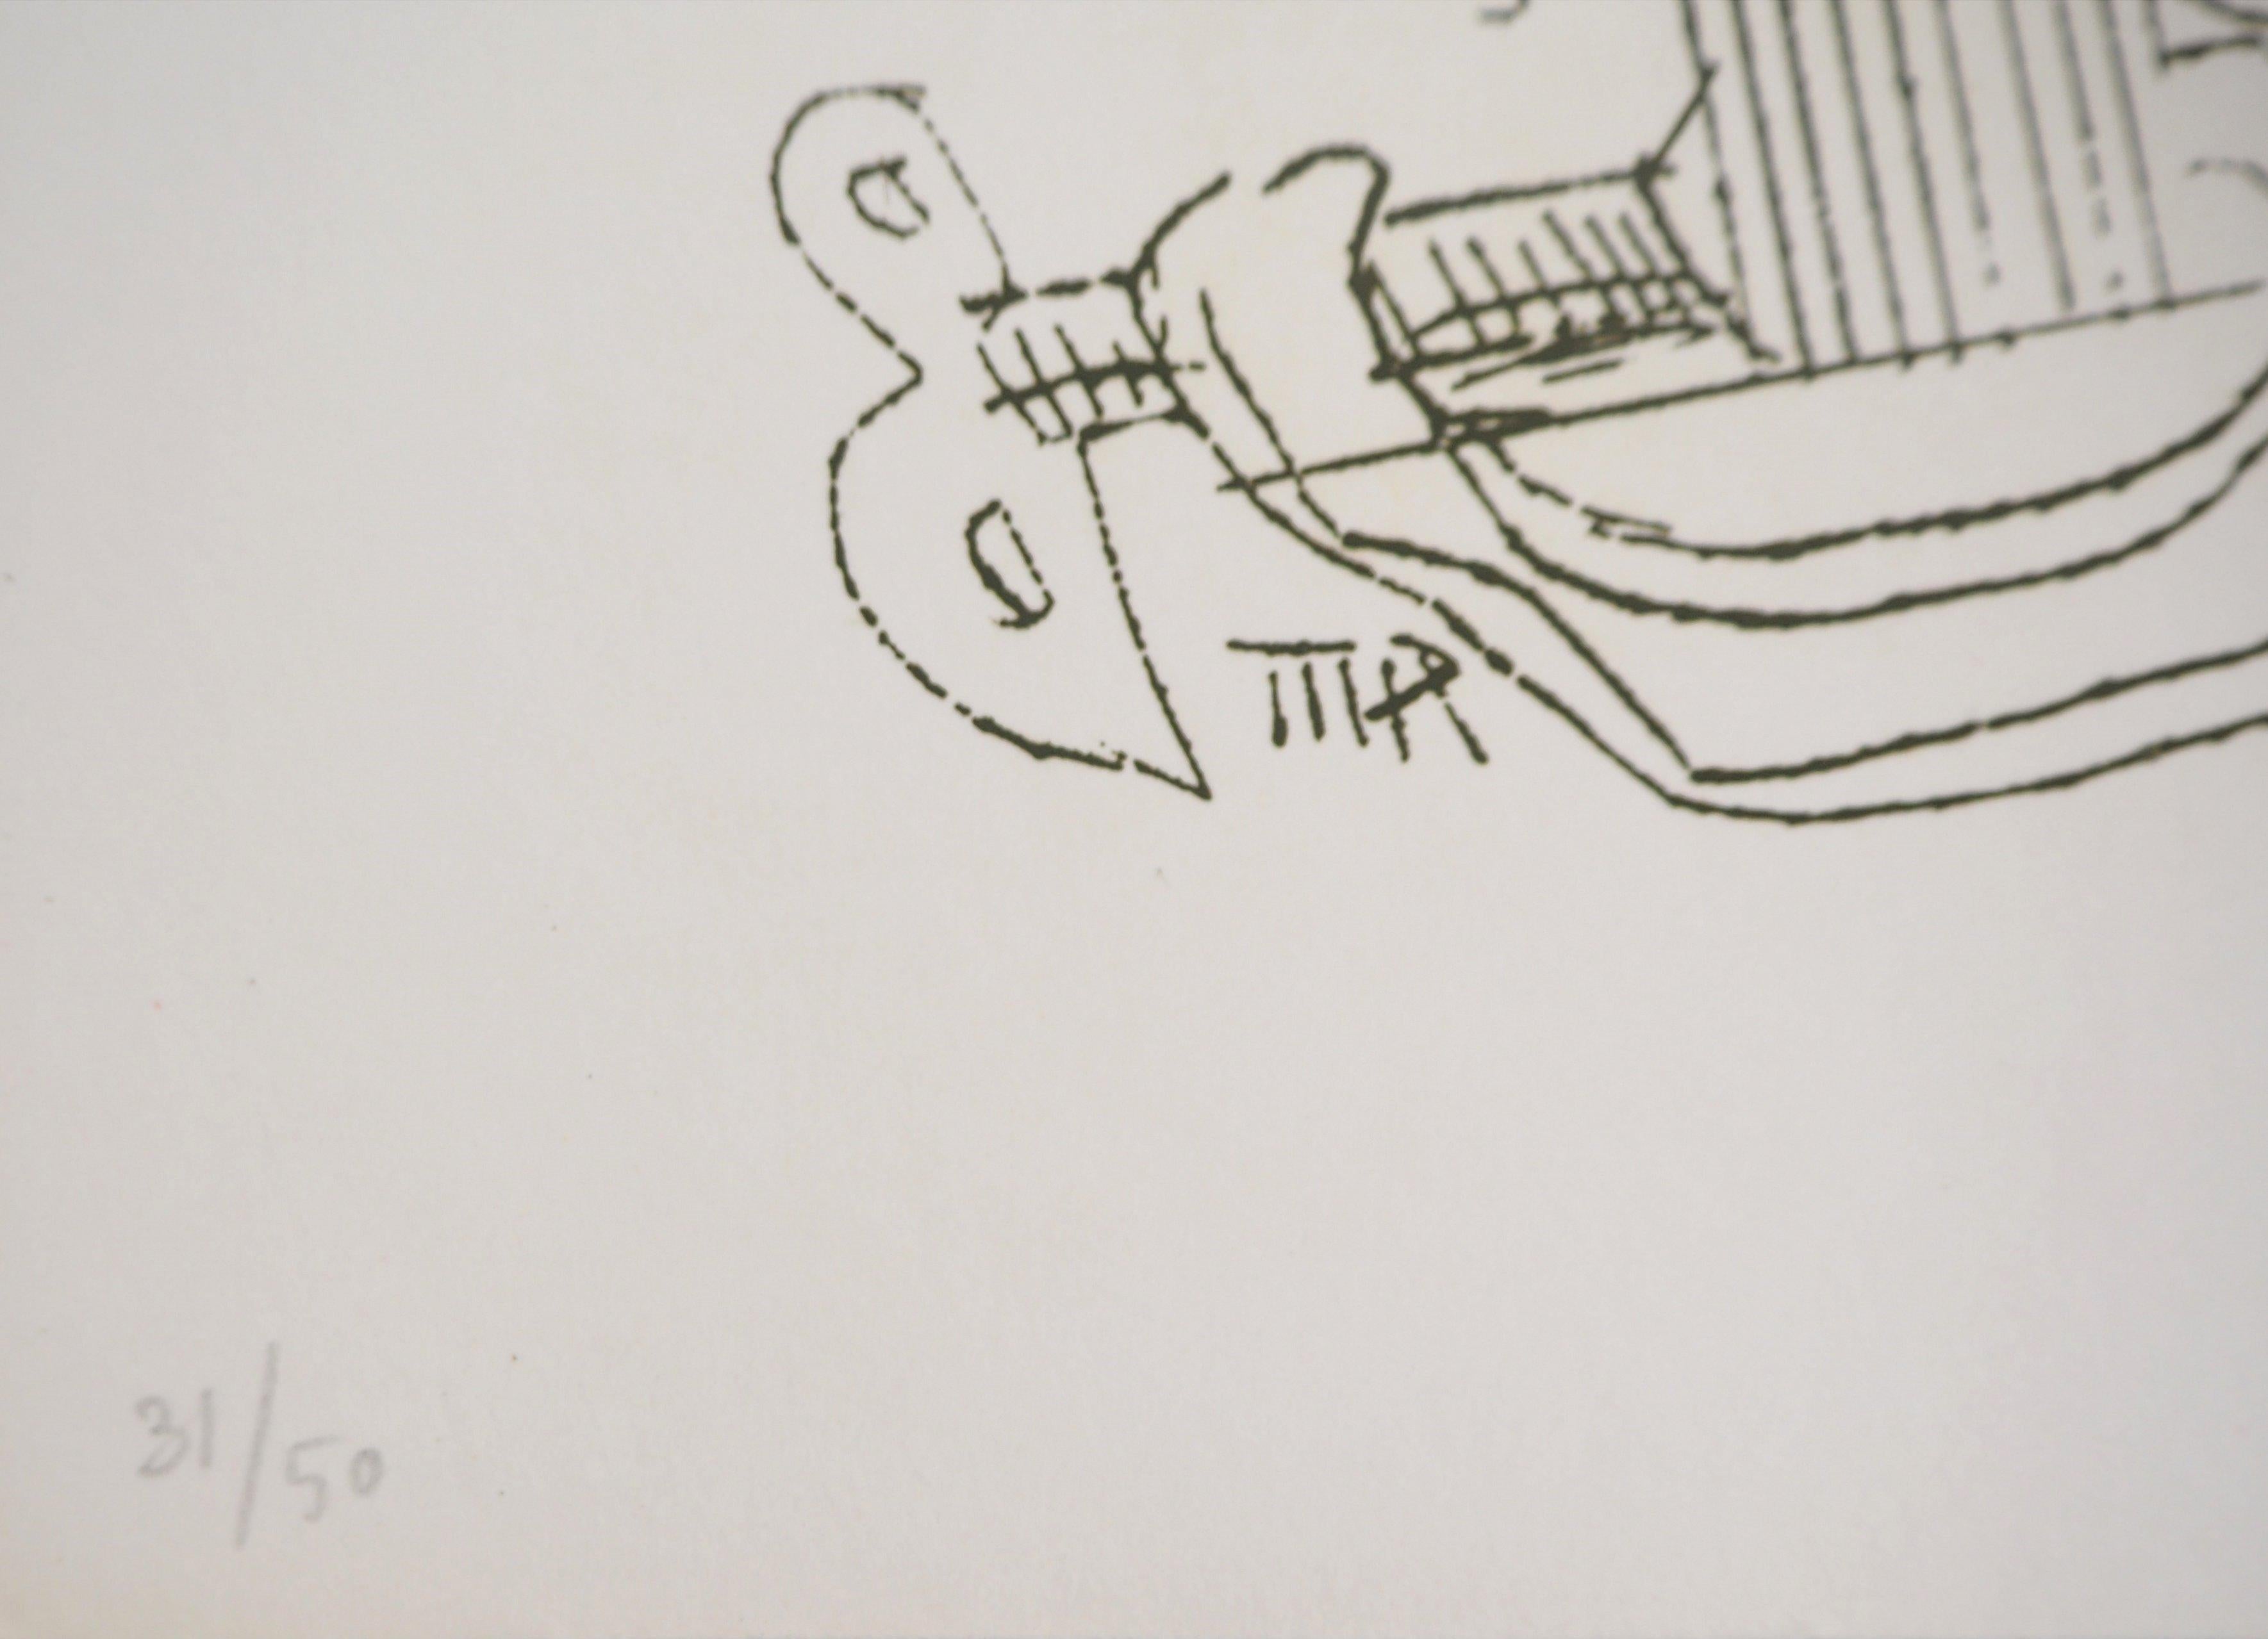 Man Ray (Emmanuel Radnitsky, alias)
Surrealistische Maschine, Fausta, 1969

Handsignierte Original-Radierung 
Auch gedruckte Unterschrift in der Platte
Auf Pergament, 23 x 17 cm (ca. 9 x 6,6 inch)
Nummeriert /50 Exemplare

INFORMATIONEN :  Diese